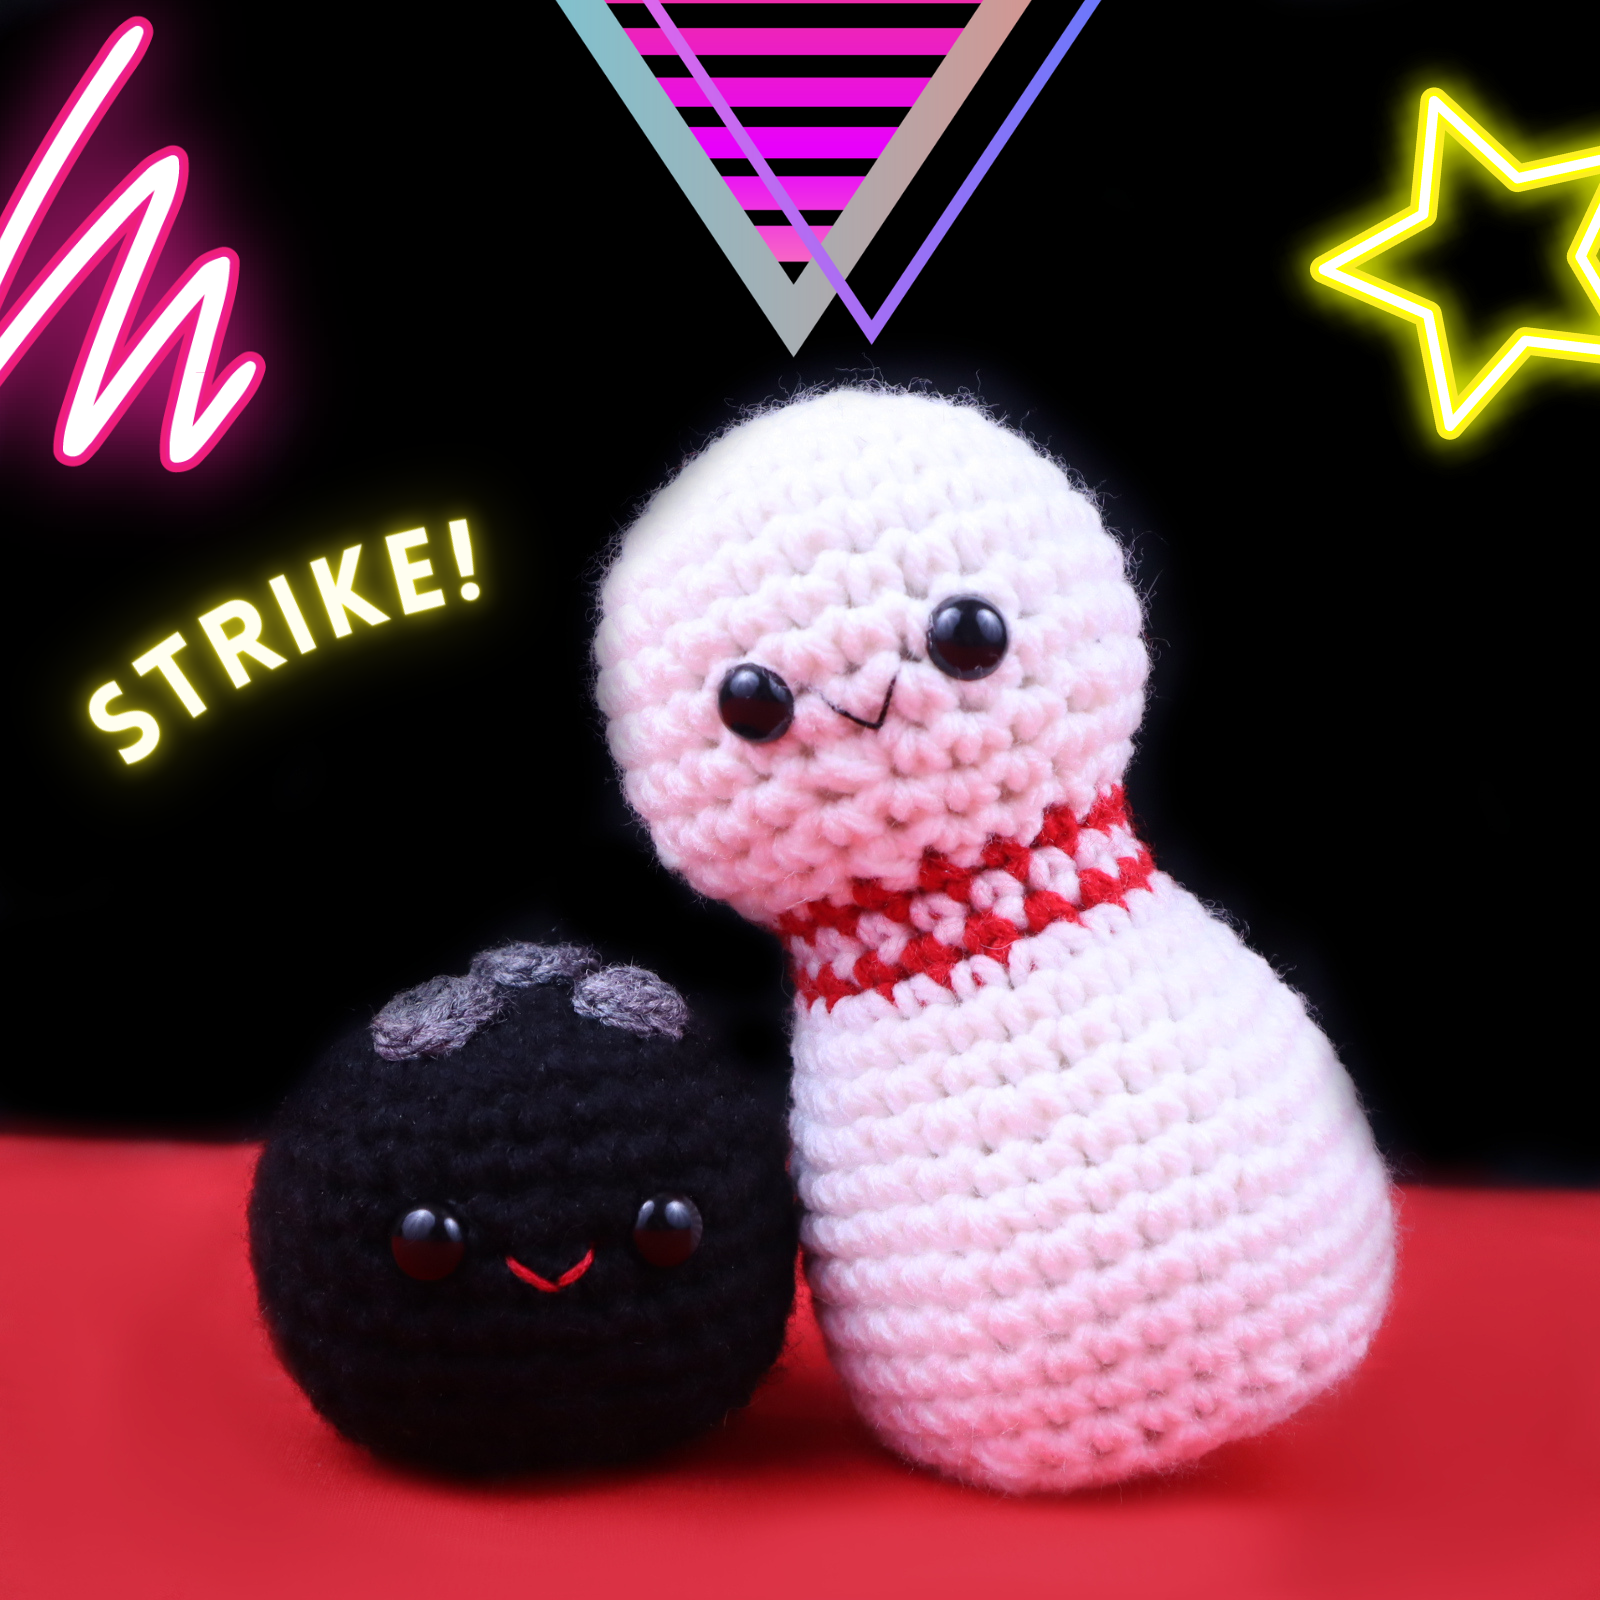 Free bowling crochet amigurumi pattern ball pin